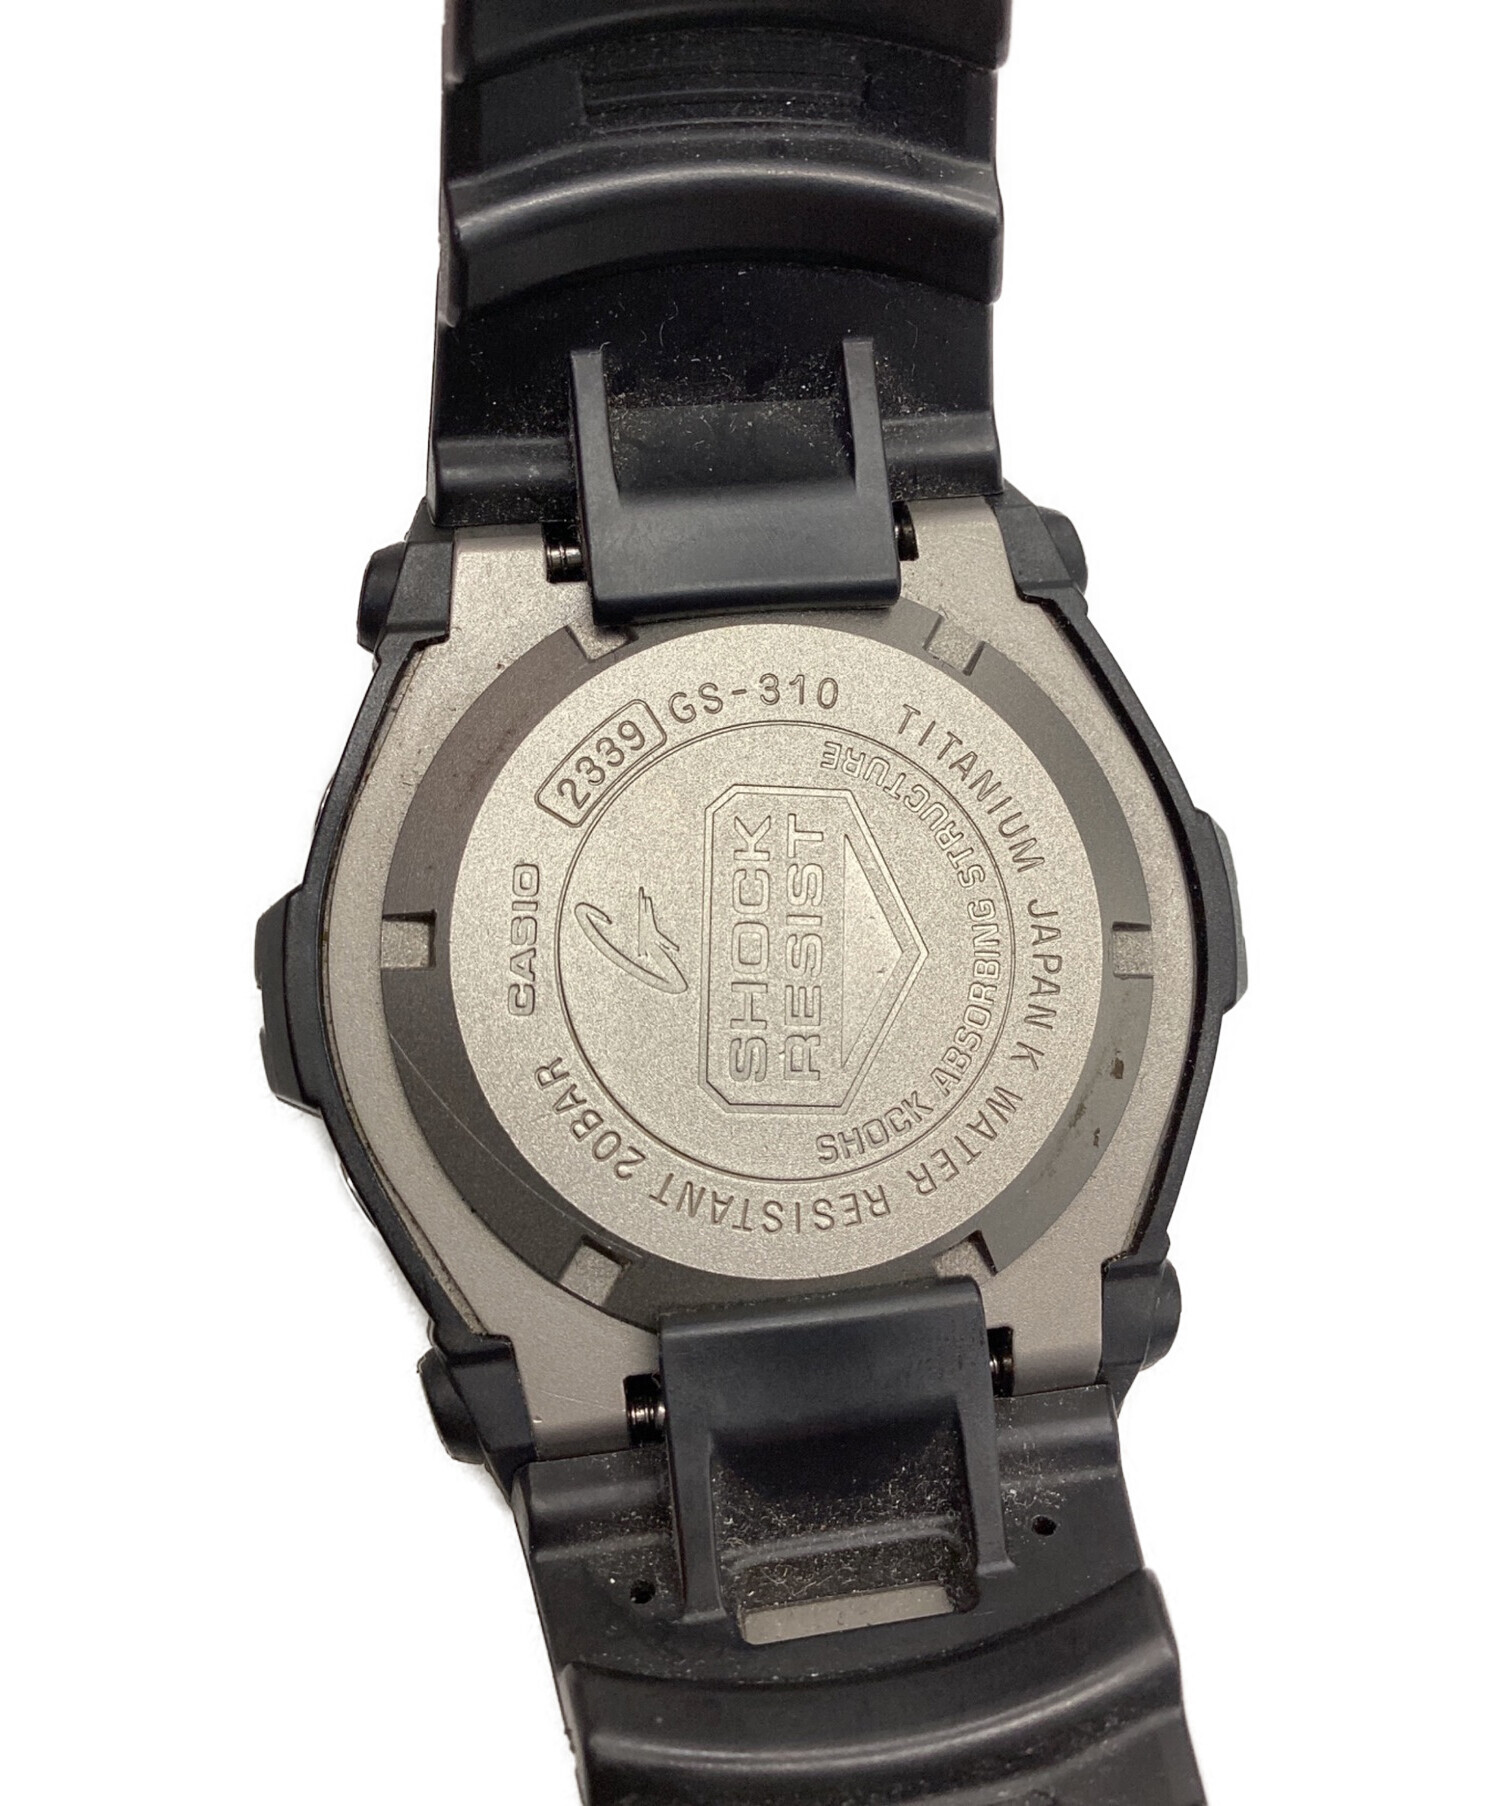 激安価格の G-SHOCK 5608 タフソーラー ブラック JA 腕時計(アナログ